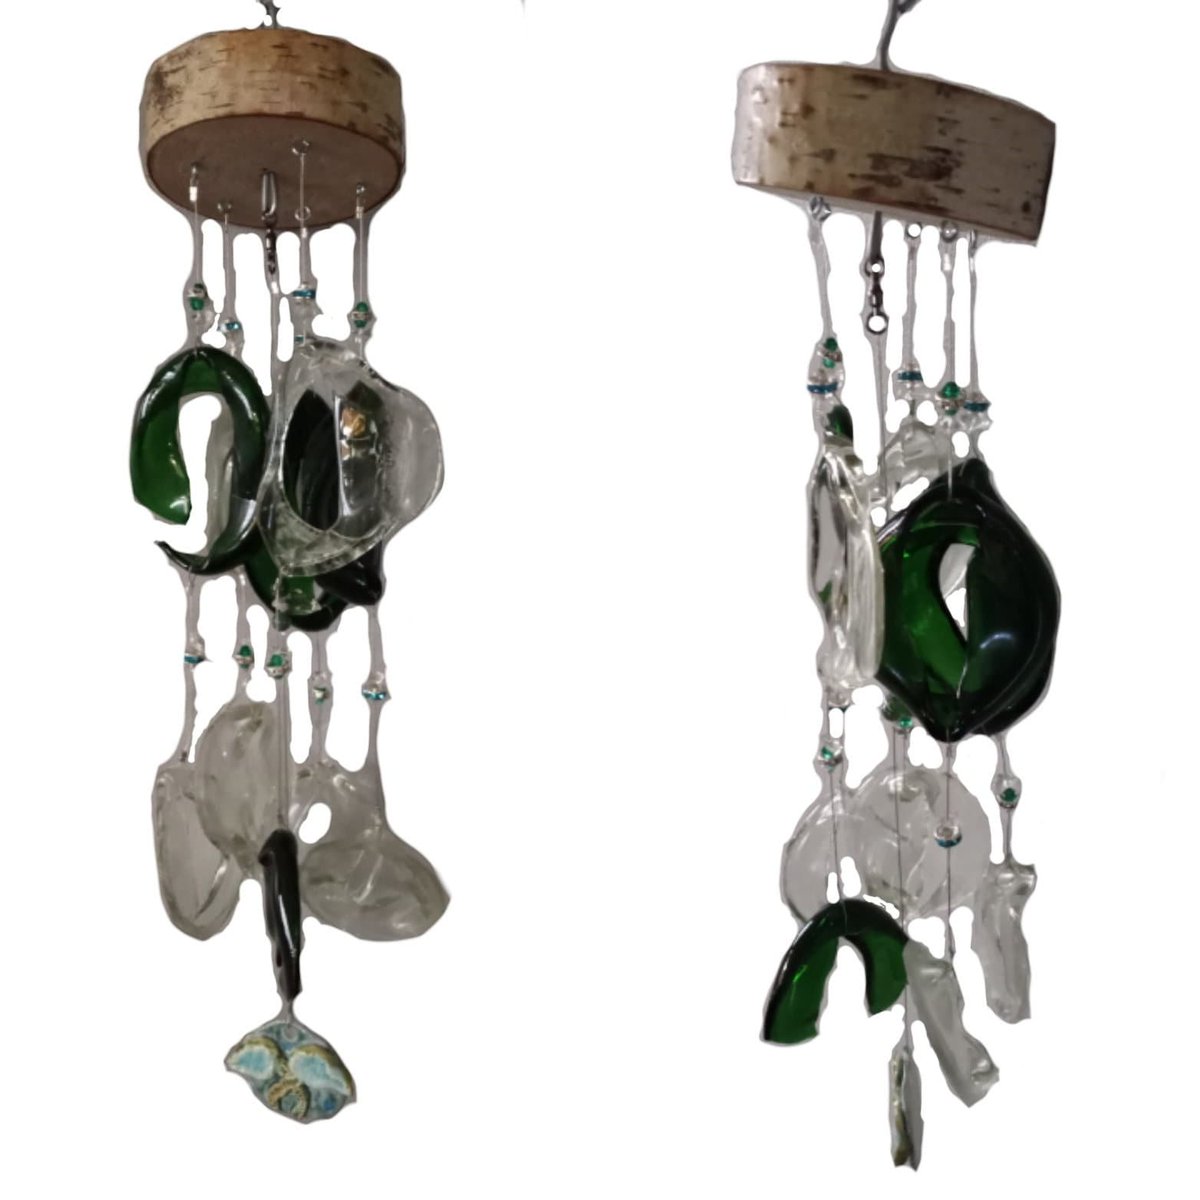 Green Bottle Windchime fused glass Mobile Chime tuppu.net/1f72940f #madeincanada #GaiasSacredCreations #Etsy #pottery #handmade #SeaBottle